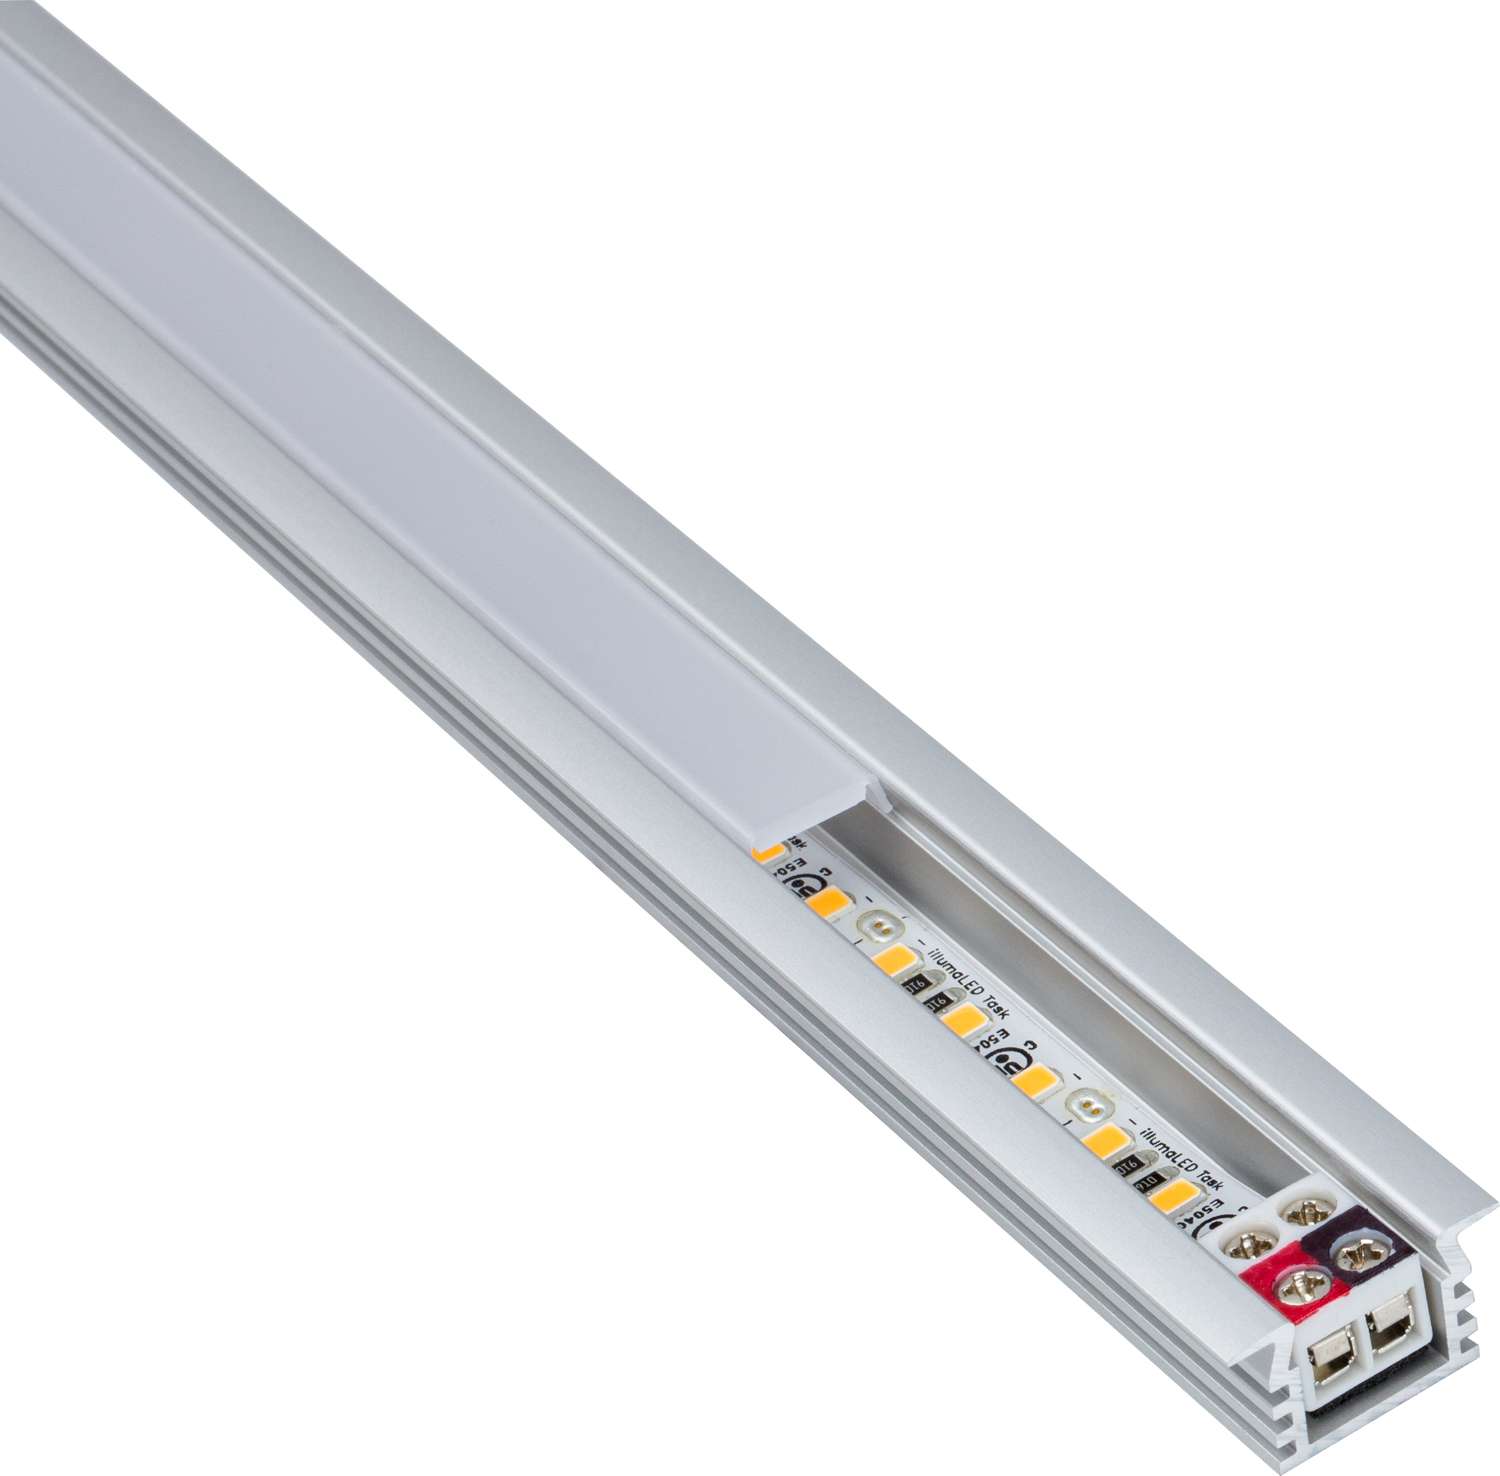 under cabinet lighting junction box Task Lighting Linear Fixtures;Single-white Lighting Aluminum